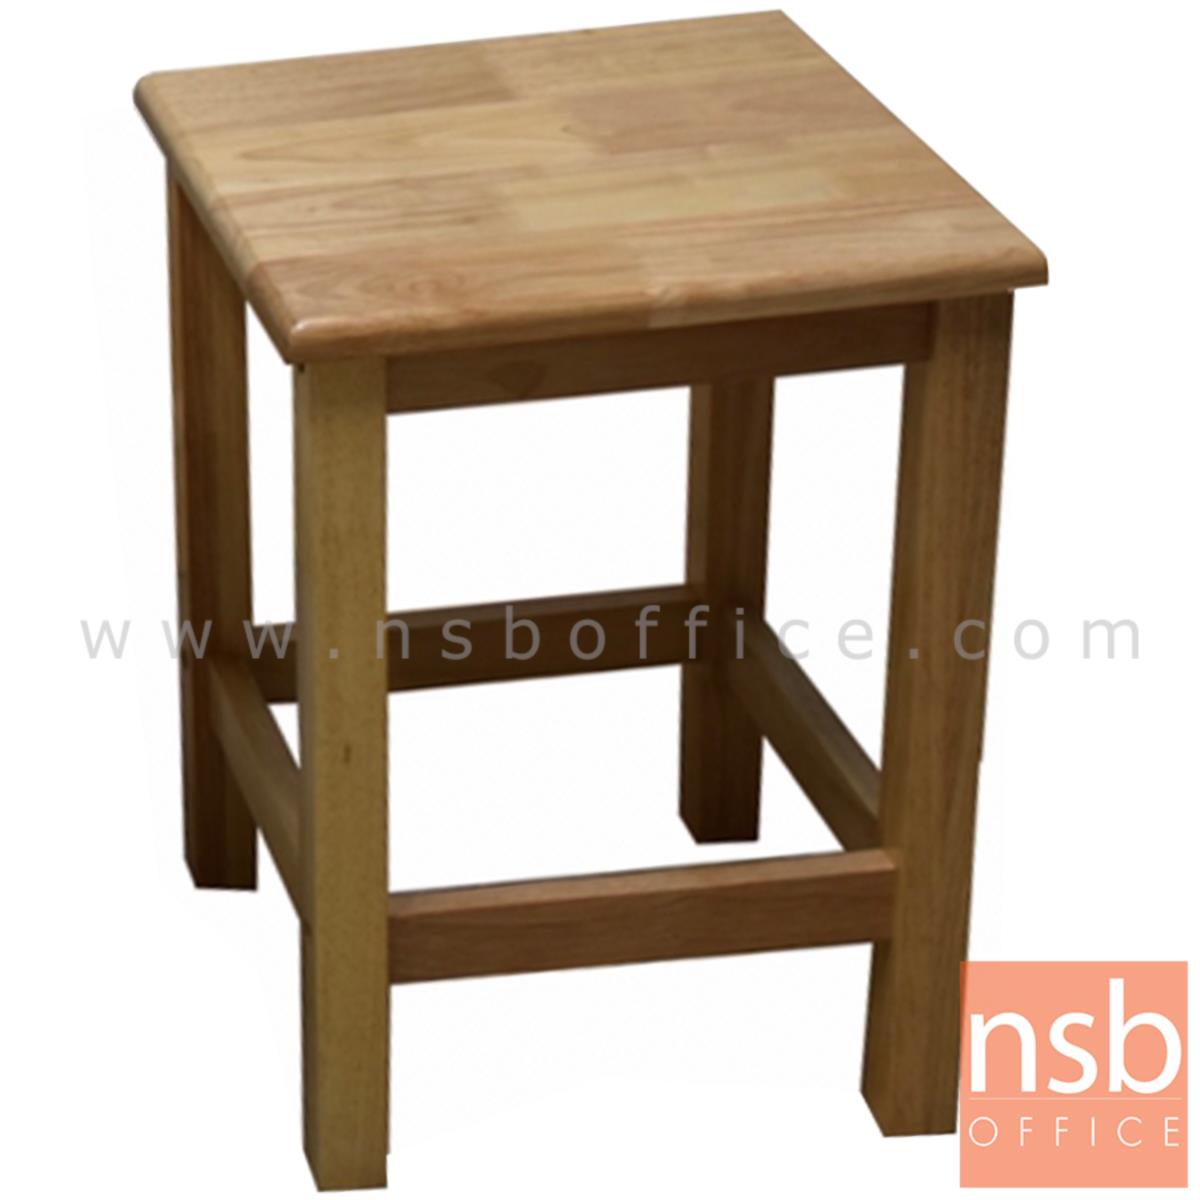 B09A211:เก้าอี้เหลี่ยมไม้ยางพารา รุ่น HAZELNUT (ฮาเซลนัท) ขนาด 35W cm. 